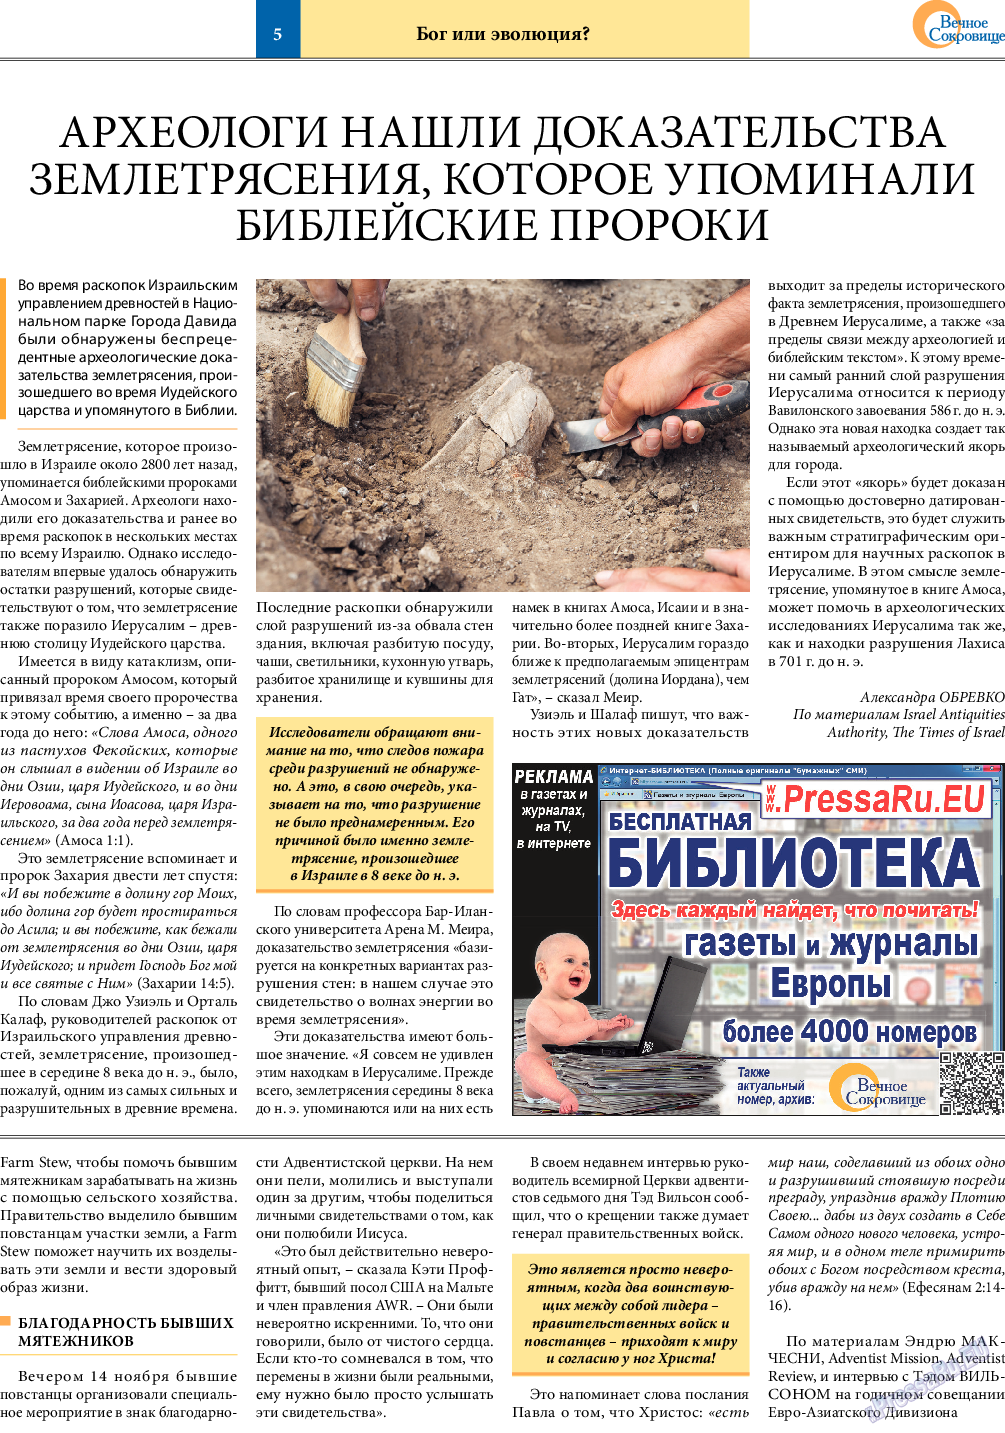 Вечное сокровище, газета. 2022 №1 стр.5